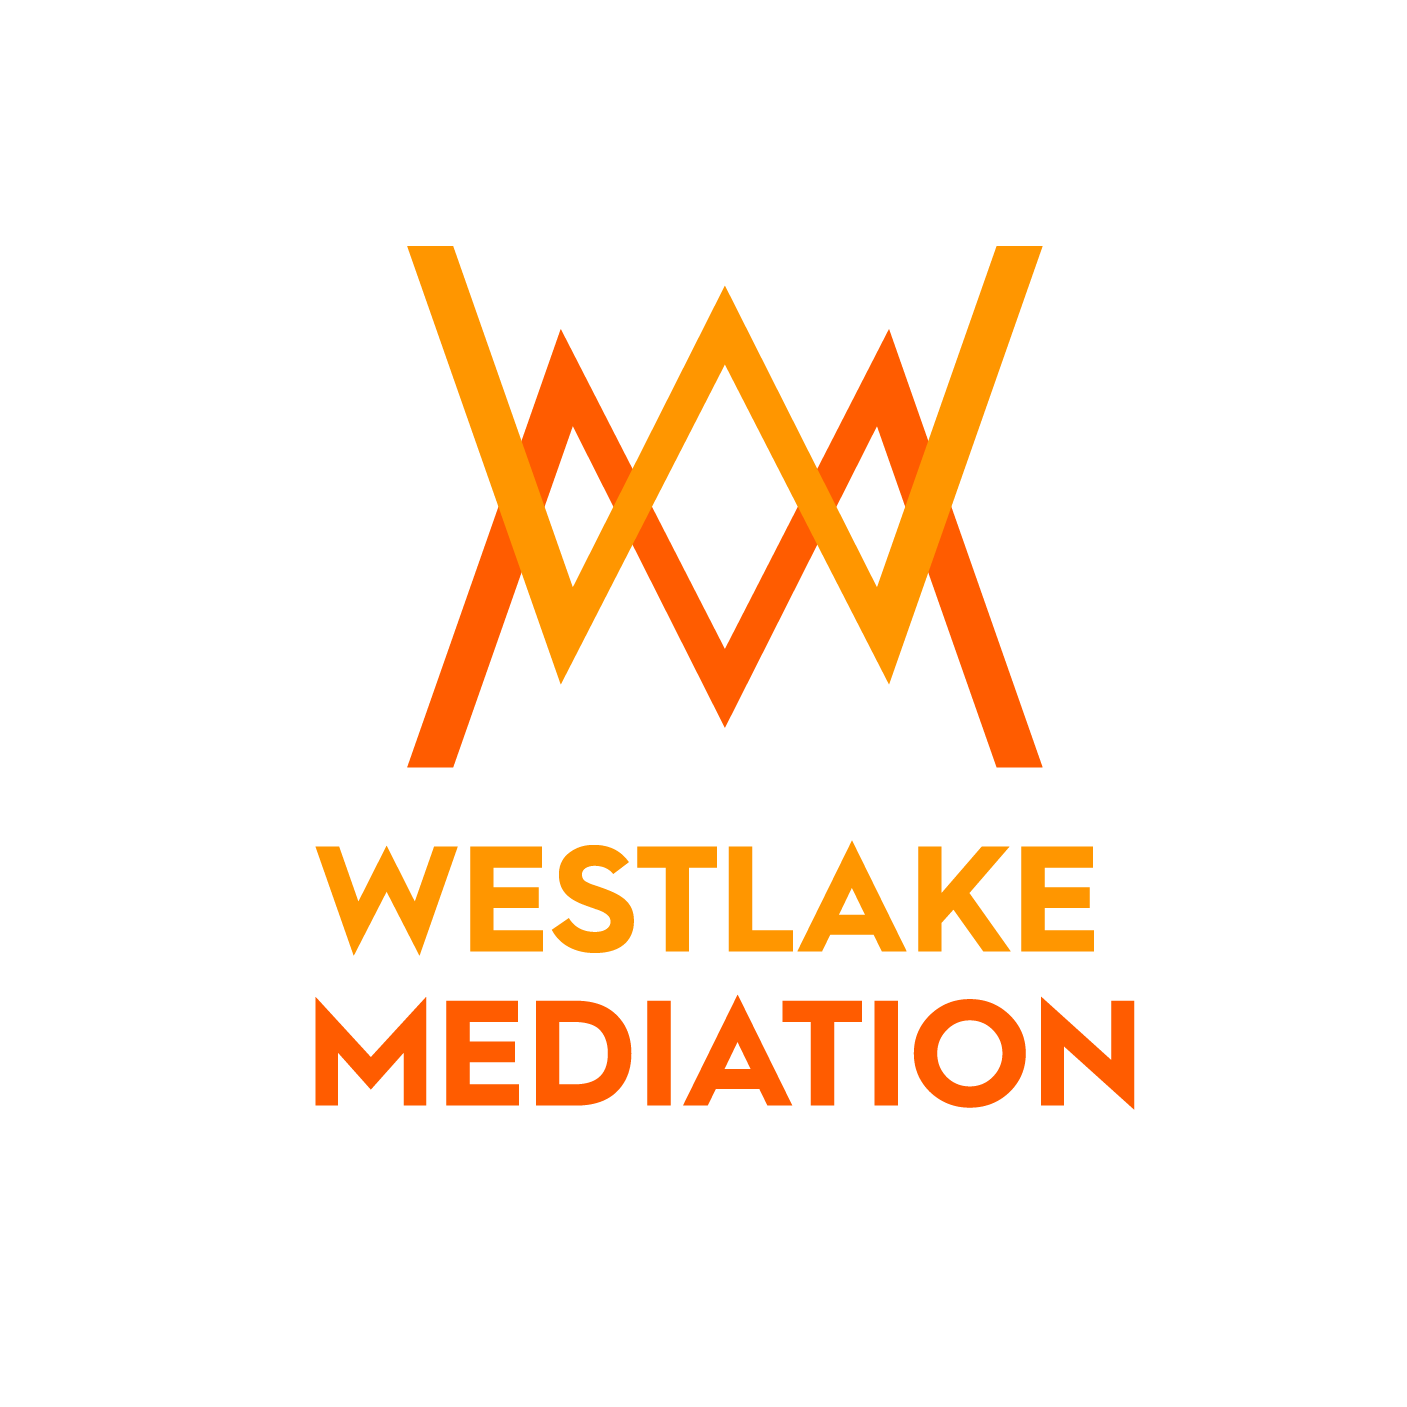 Westlake mediation logo